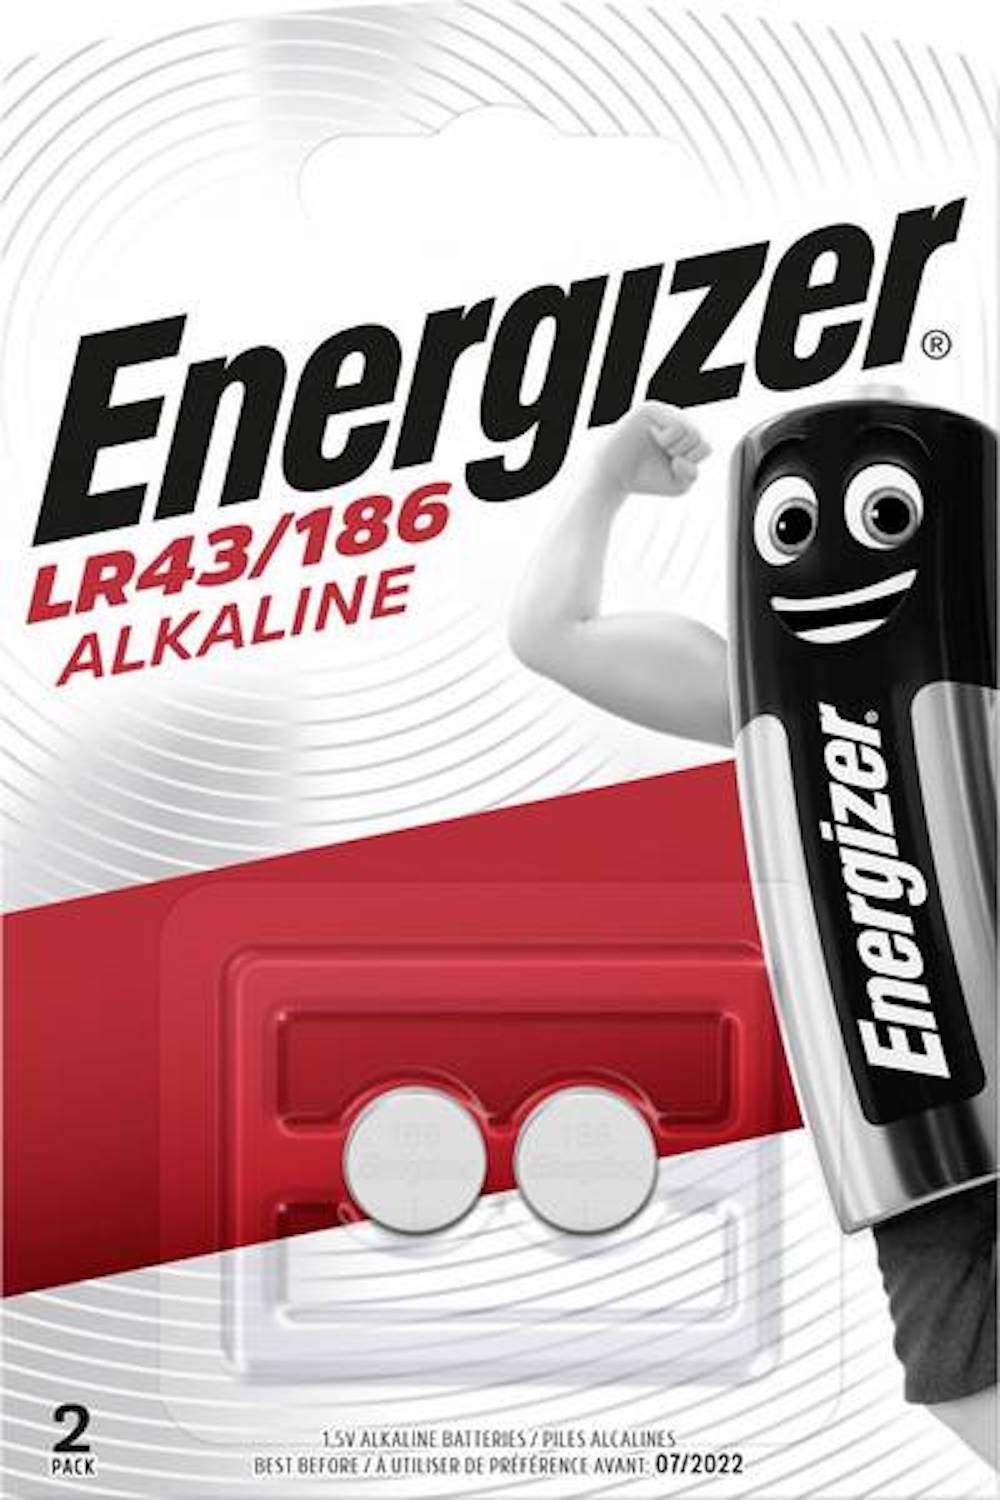 Energizer Speciale Alcaline 1,5V LR43/186 par 2